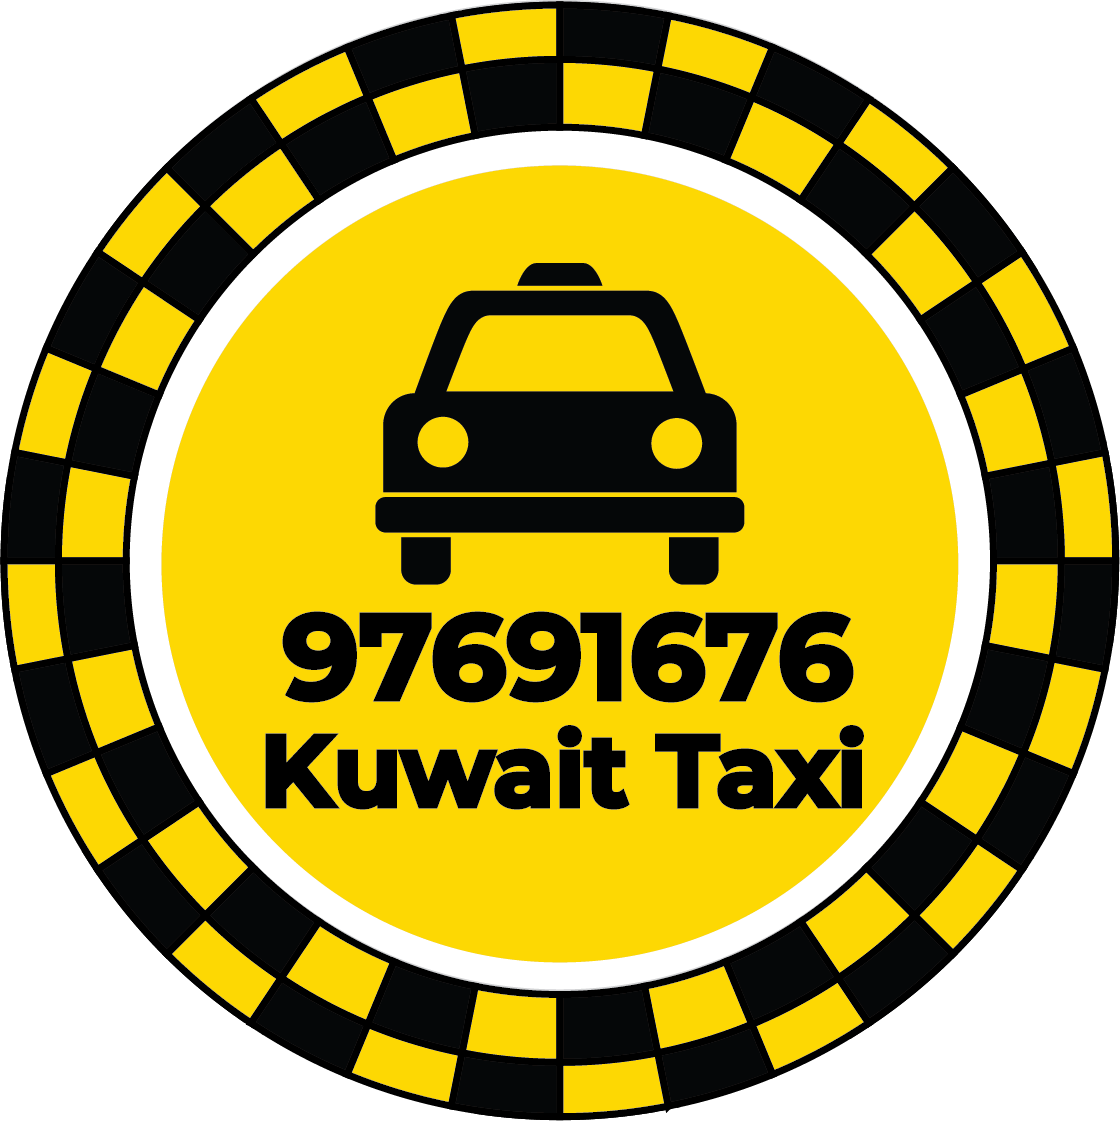 Taxi Sabahiya Kuwait - Taxi Number Sabahiya